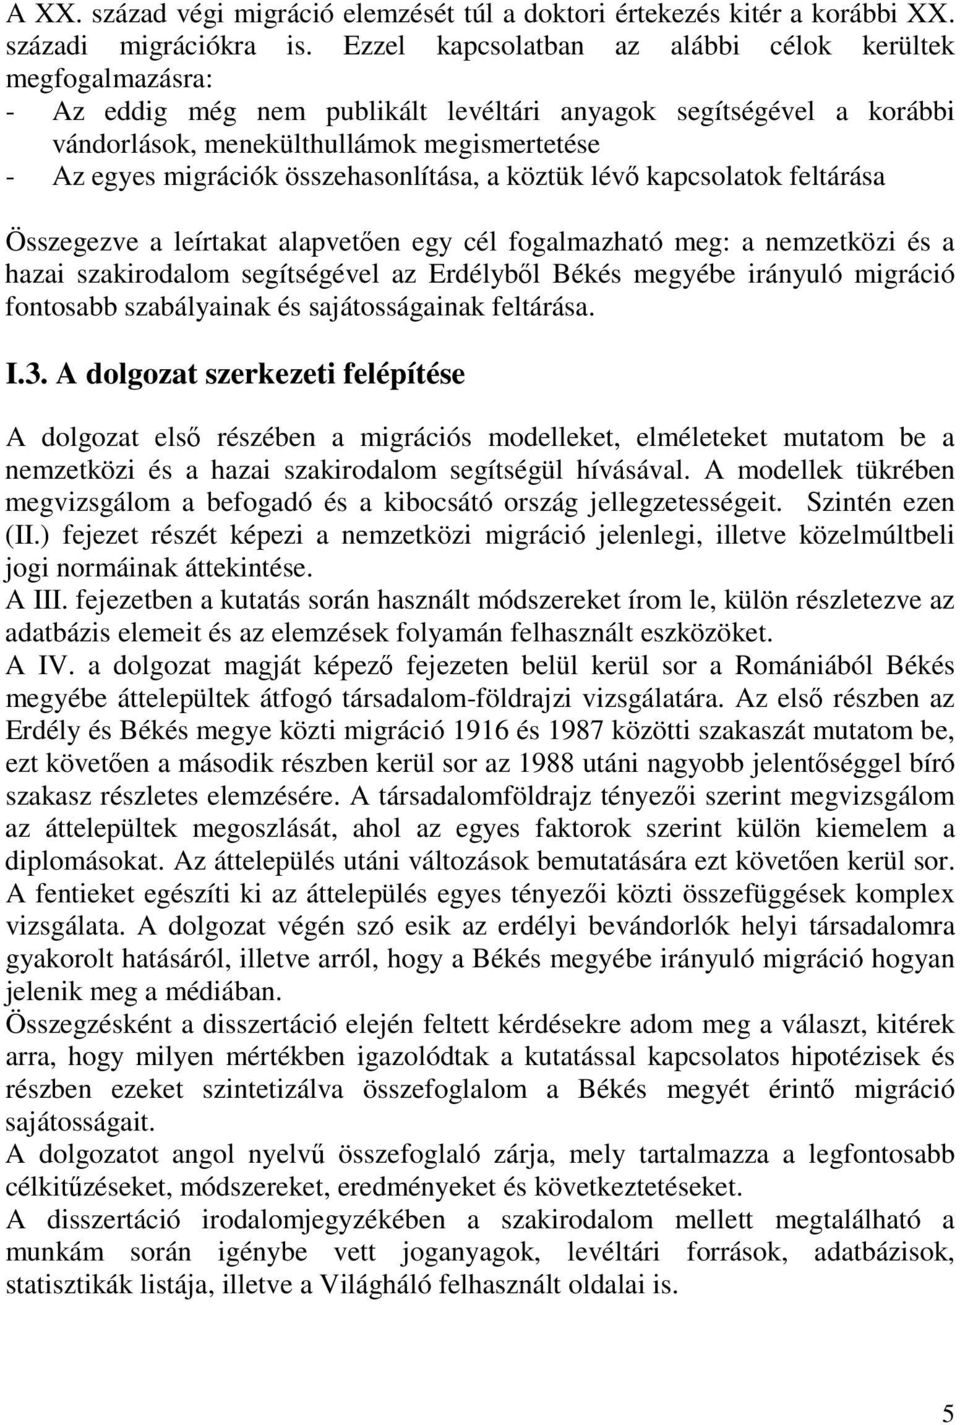 összehasonlítása, a köztük lévı kapcsolatok feltárása Összegezve a leírtakat alapvetıen egy cél fogalmazható meg: a nemzetközi és a hazai szakirodalom segítségével az Erdélybıl Békés megyébe irányuló